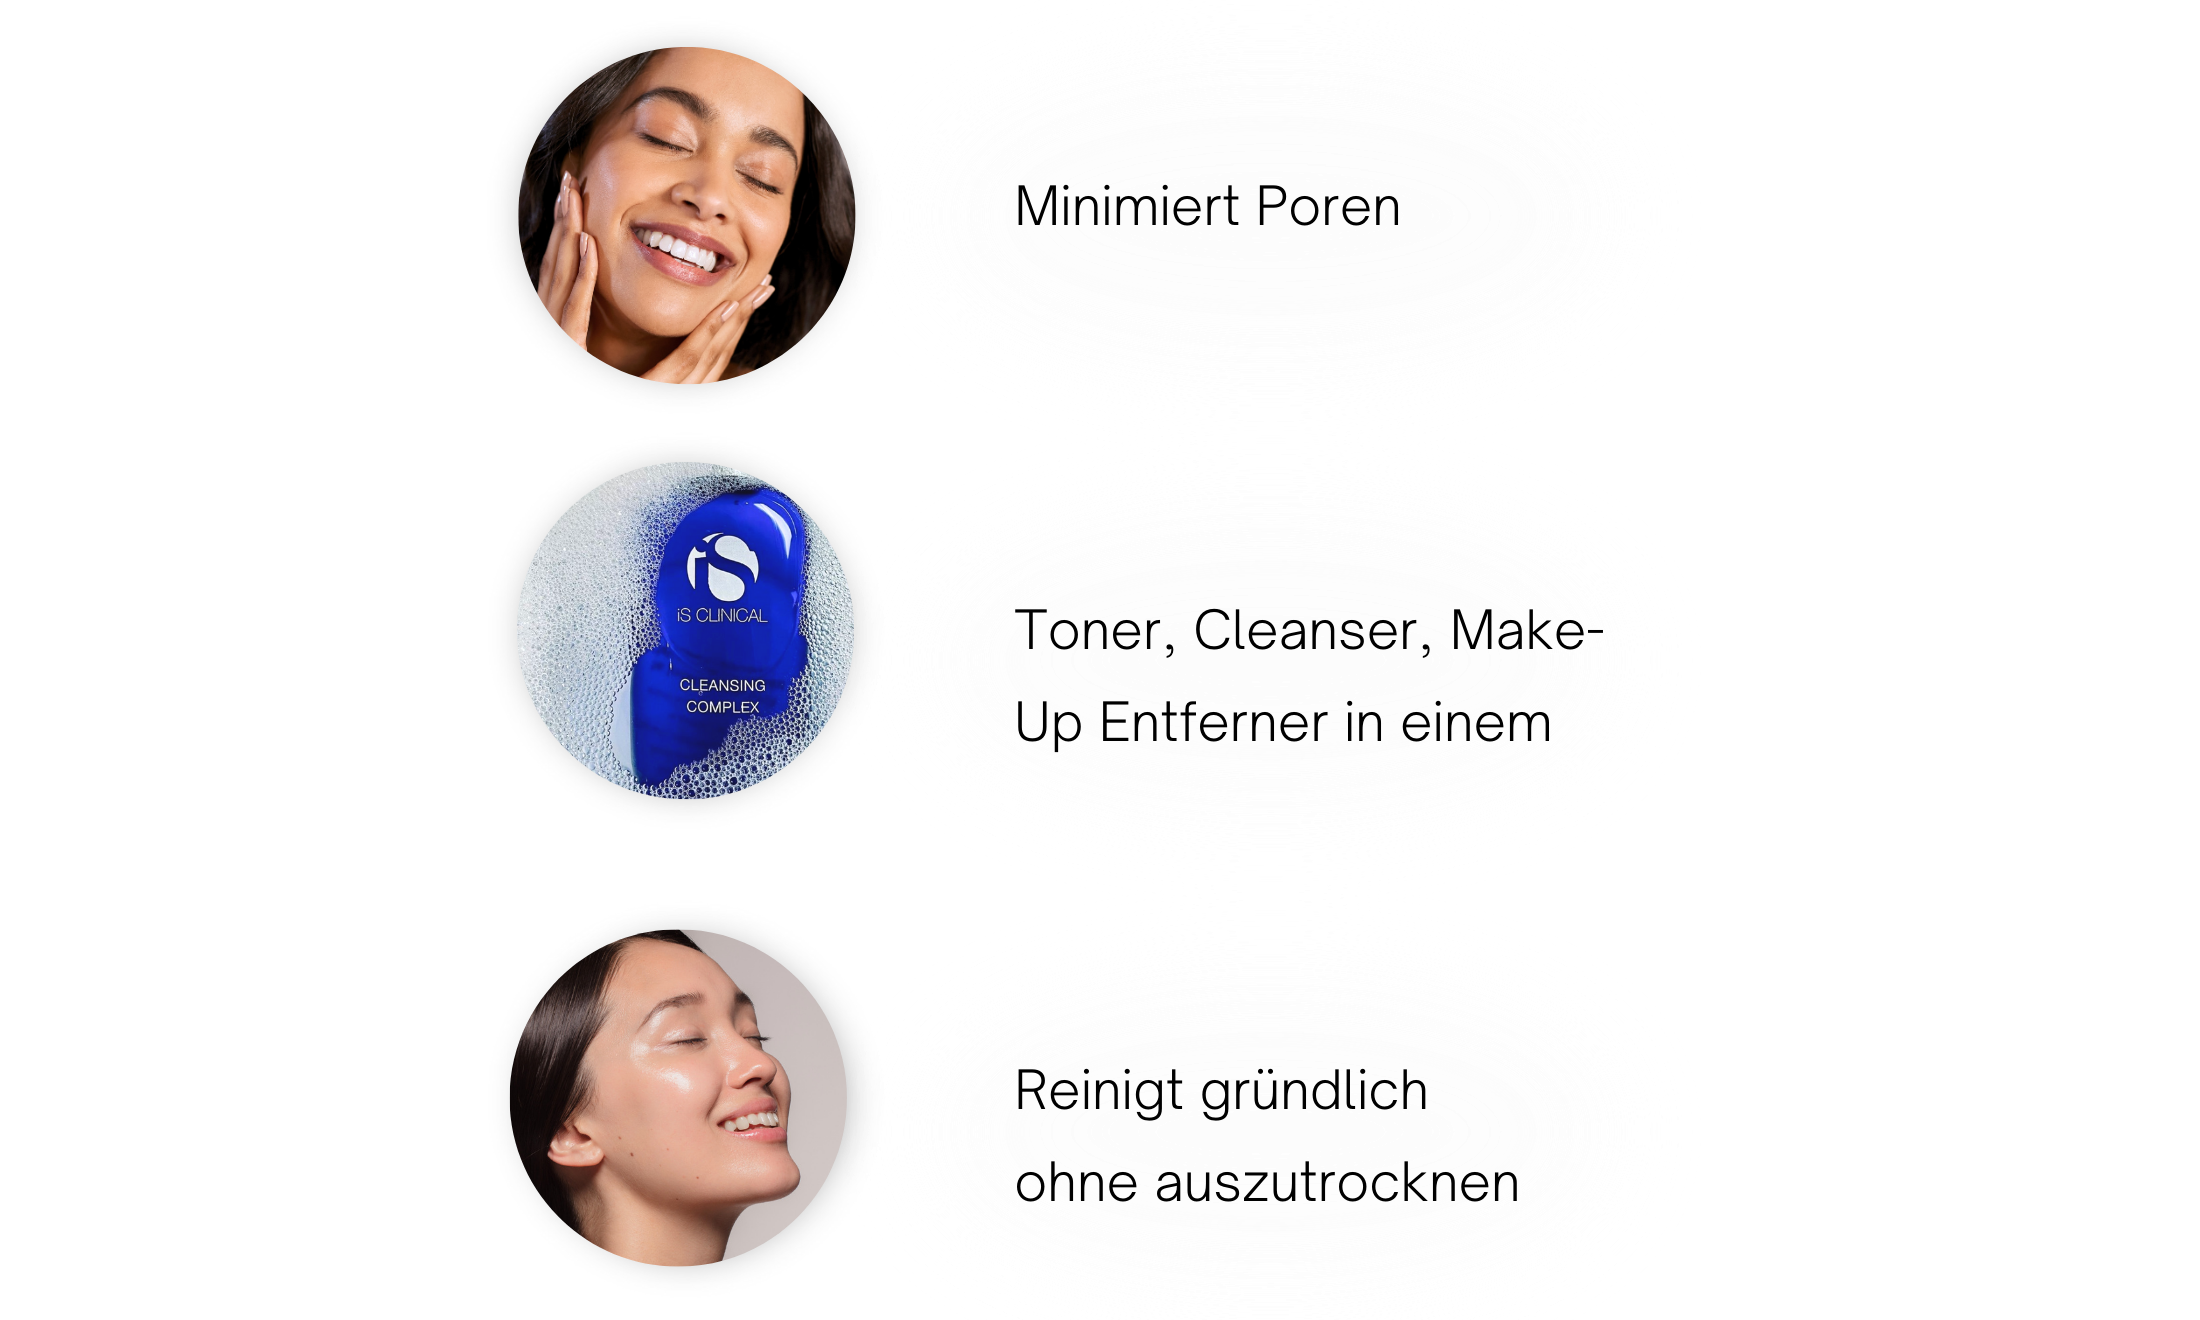 Cleansing Complex Vorteile: minimiert Poren und reinigt gründlich ohne auszutrocknen